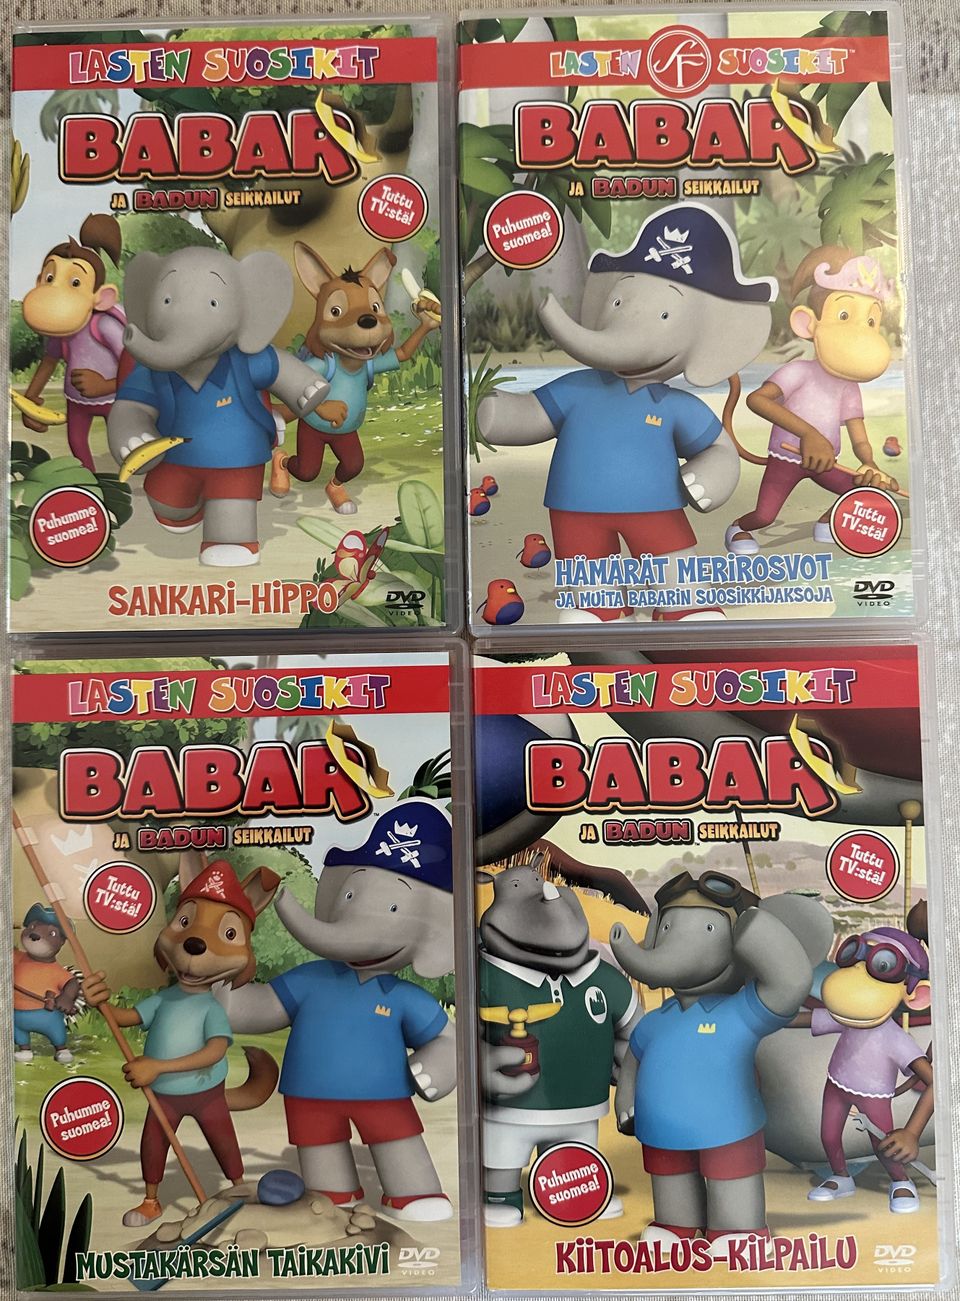 Babar ja Badun seikkailut DVD 4kpl yht. 6eur.